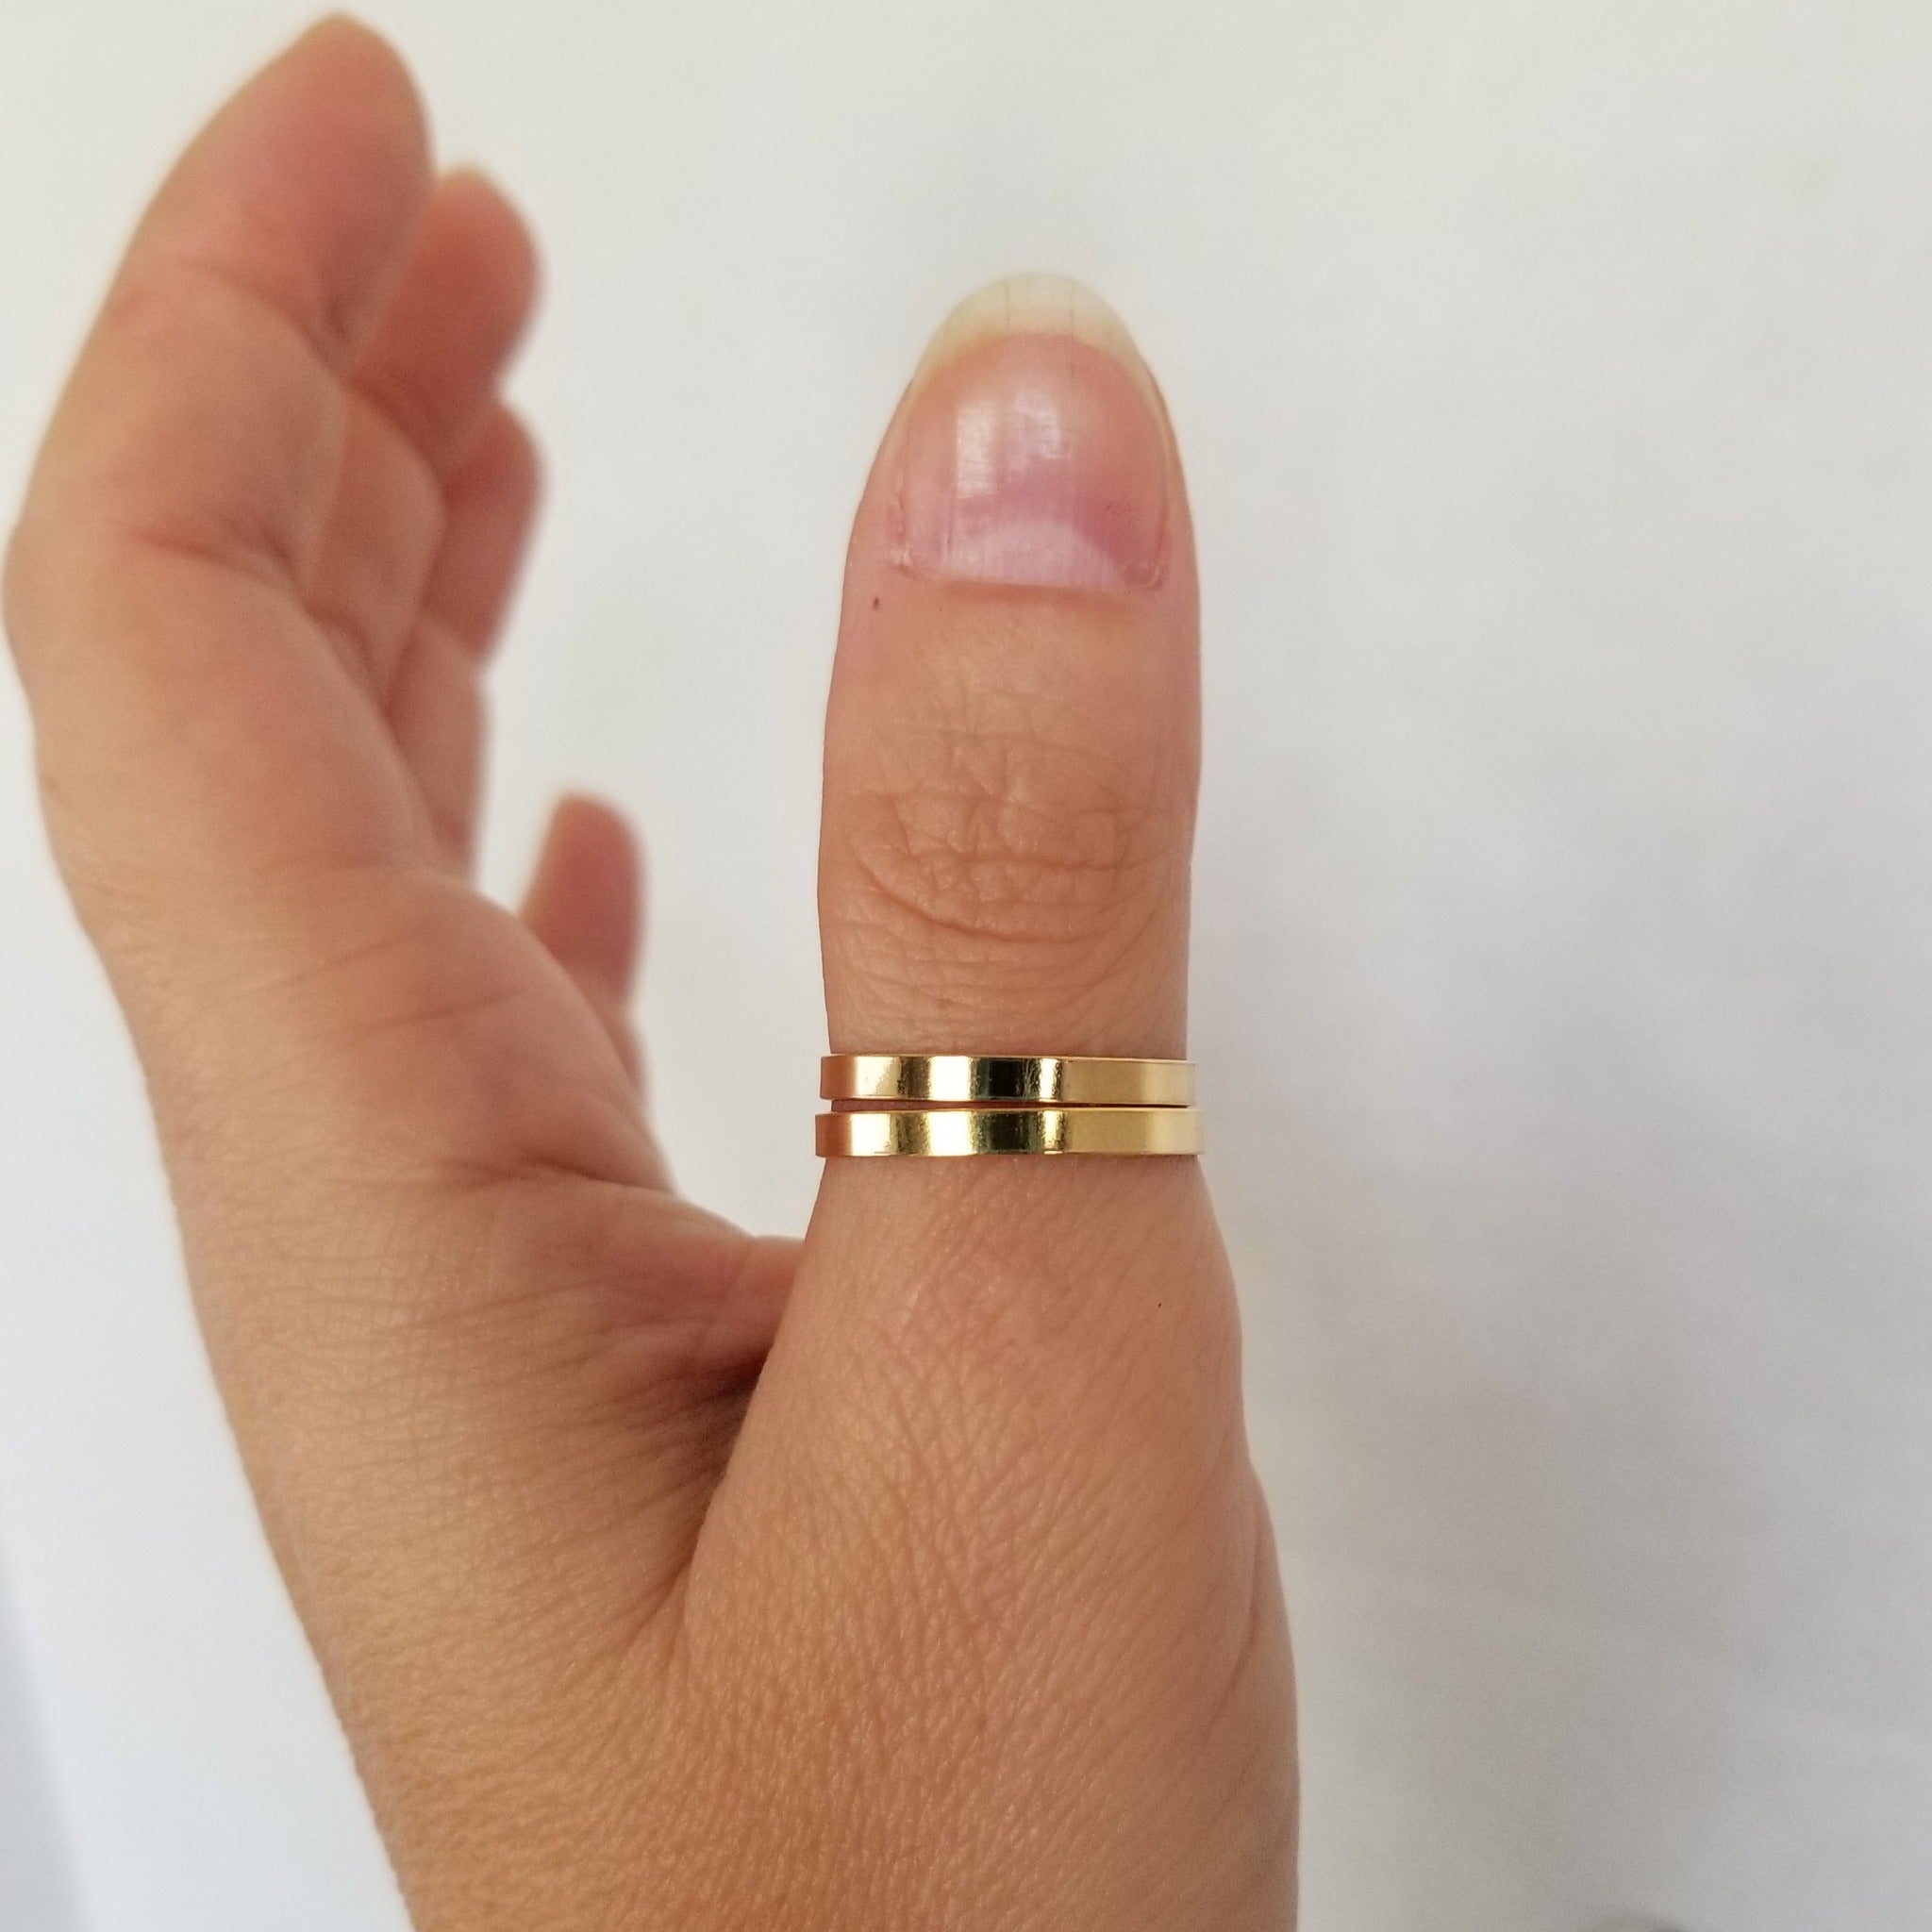 3mm Gold Name Ring - 14kt Gold Filled